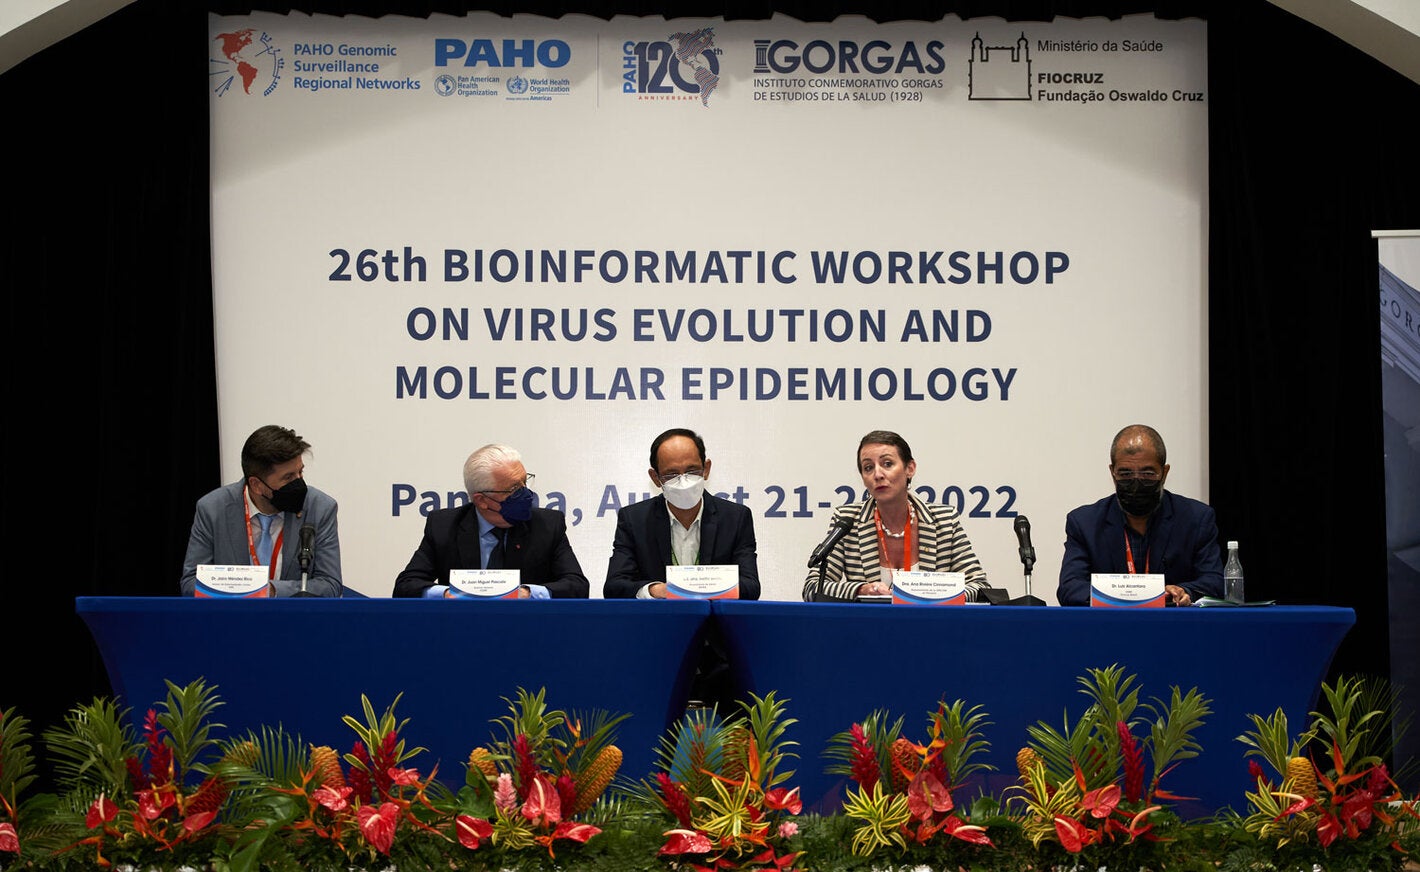 Un curso internacional para fortalecer las capacidades de laboratorios de la región para monitorear cambios genéticos en los virus